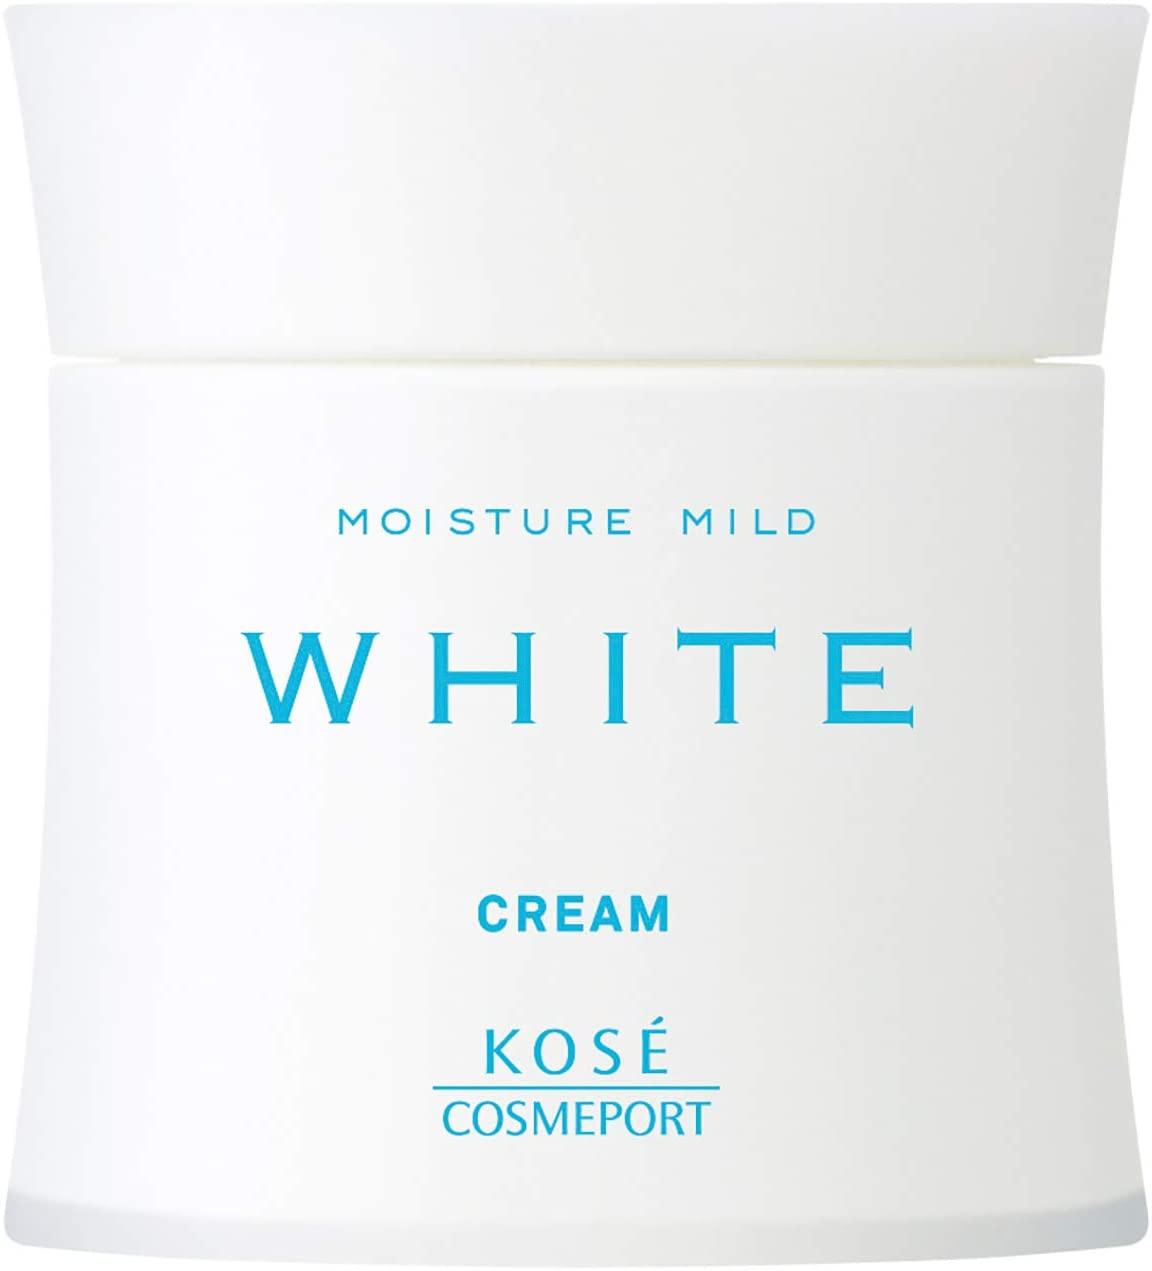 KOSE Cosmeport Moisture Mild White Cream Зволожуючий відбілюючий крем проти пігментних плям, 55 г